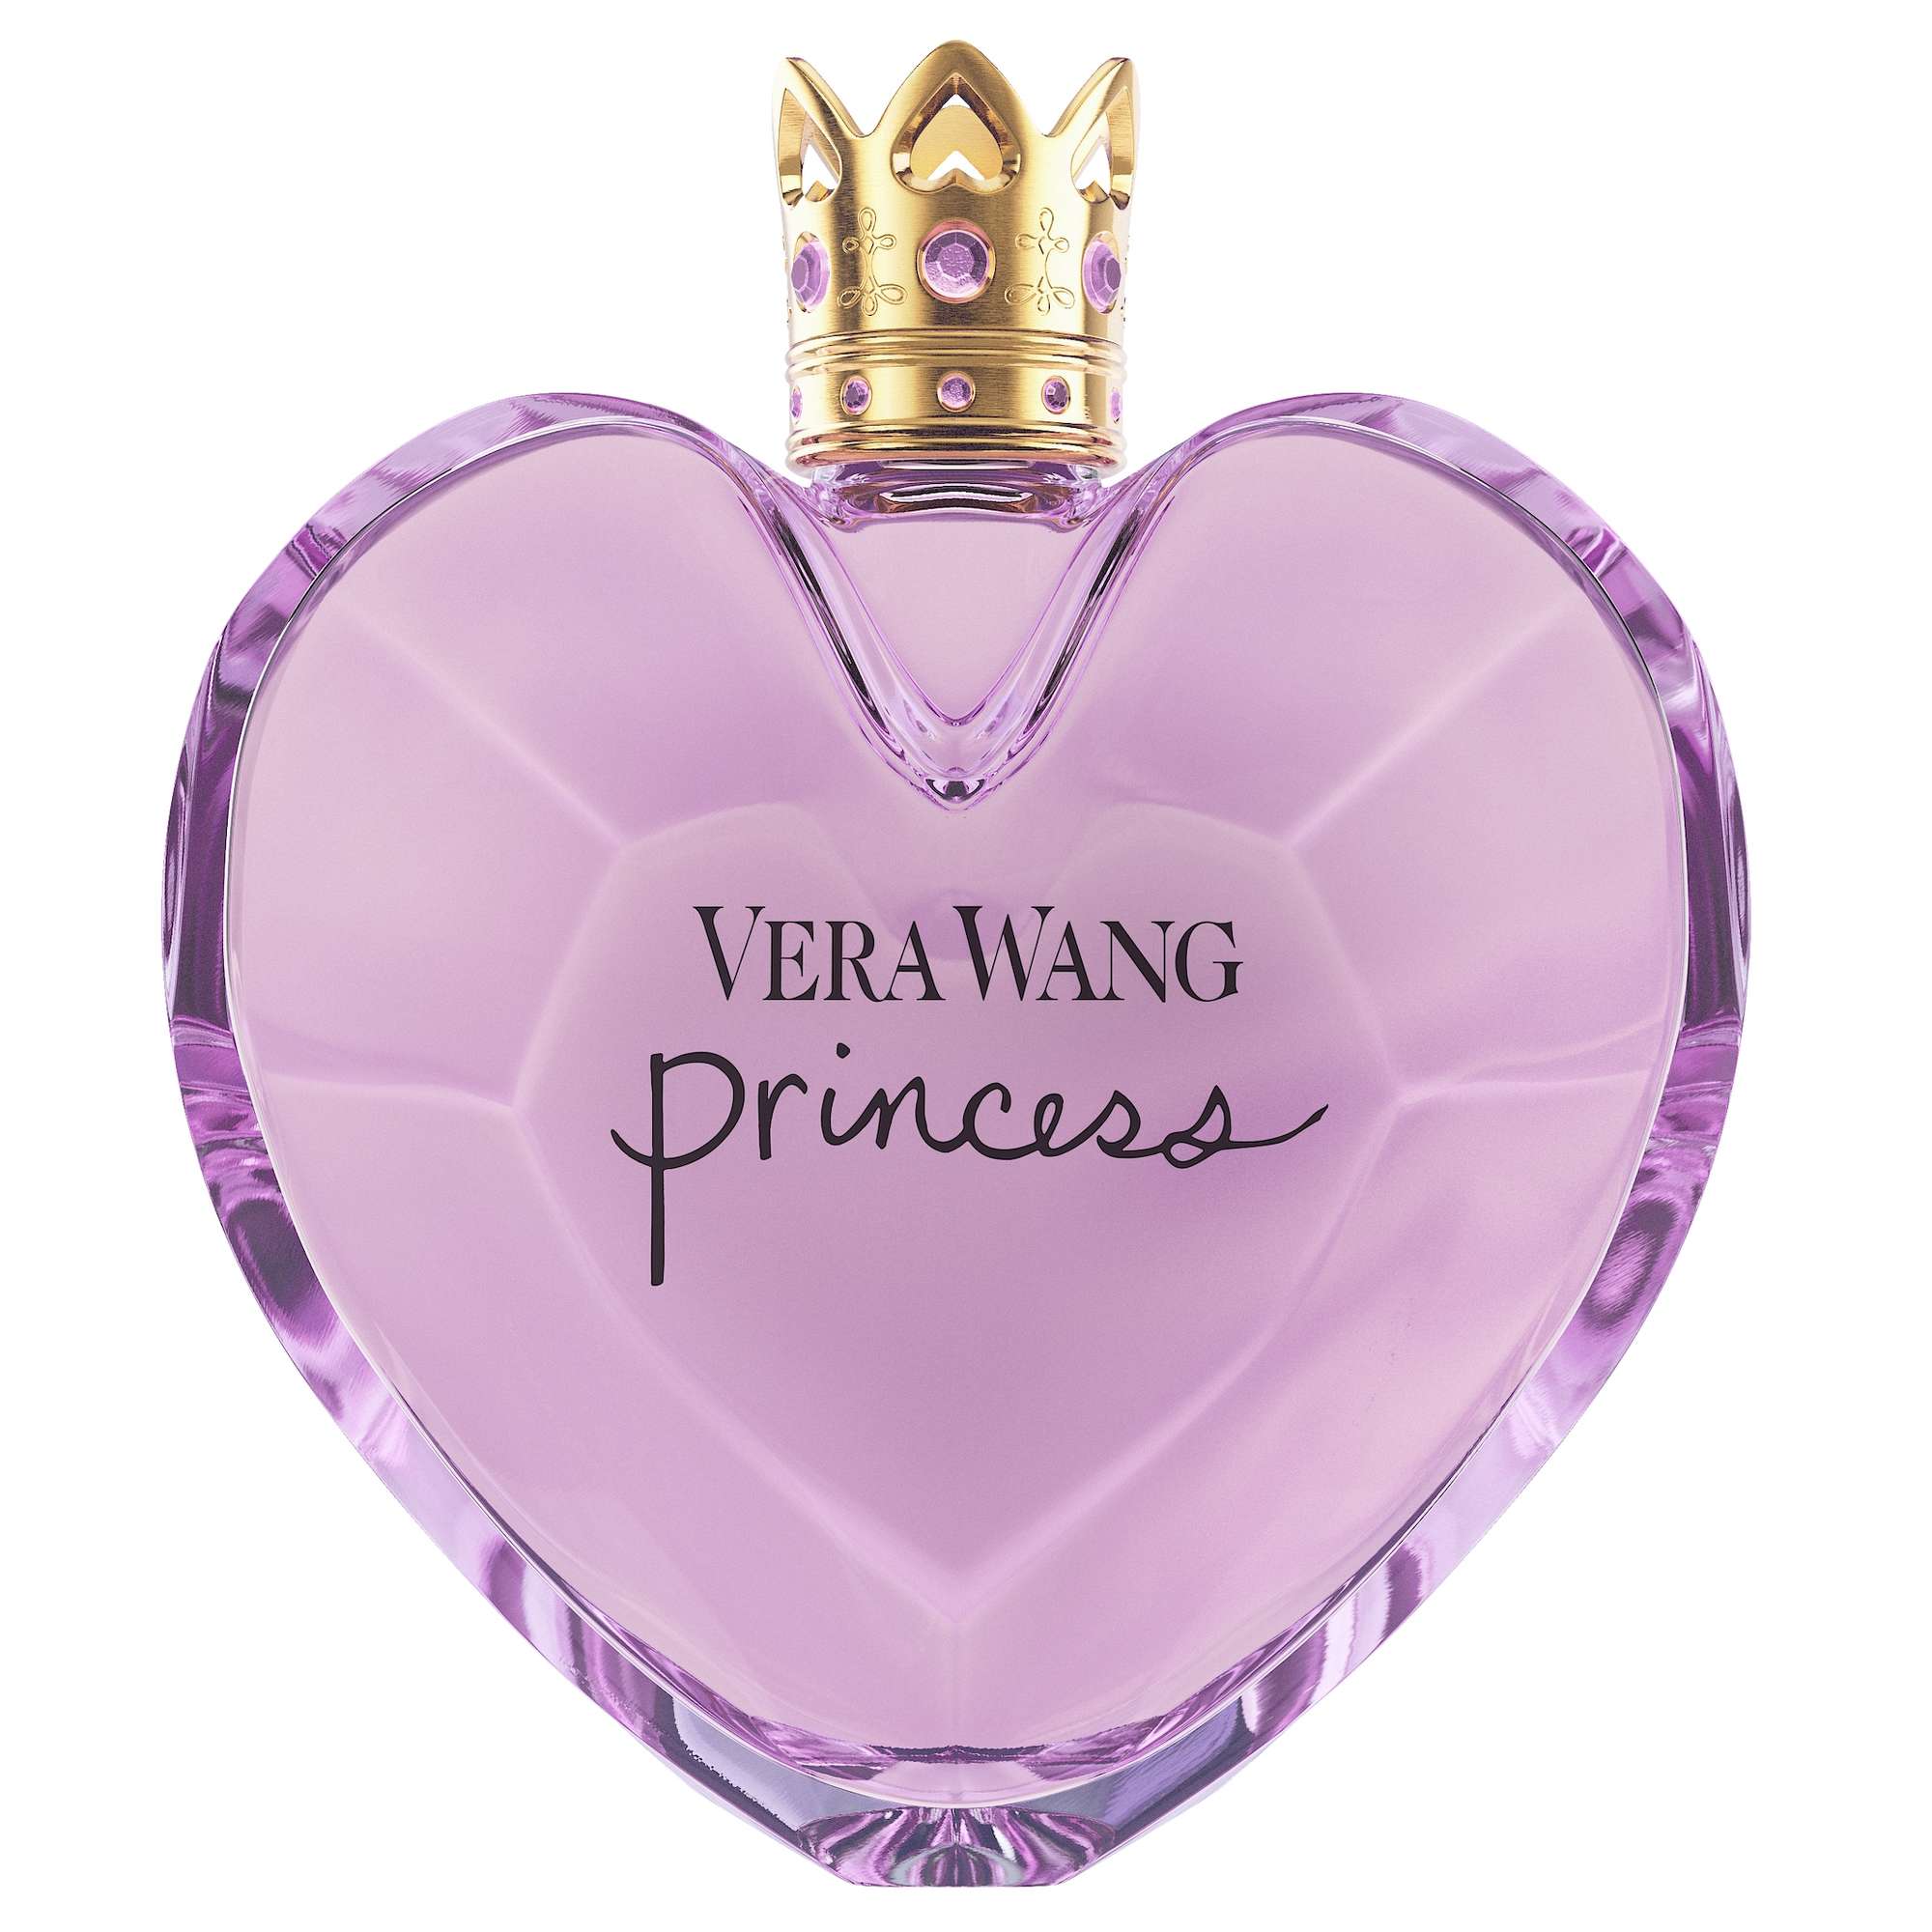 Photos - Women's Fragrance Vera Wang Princess Eau de Toilette Spray 100ml 